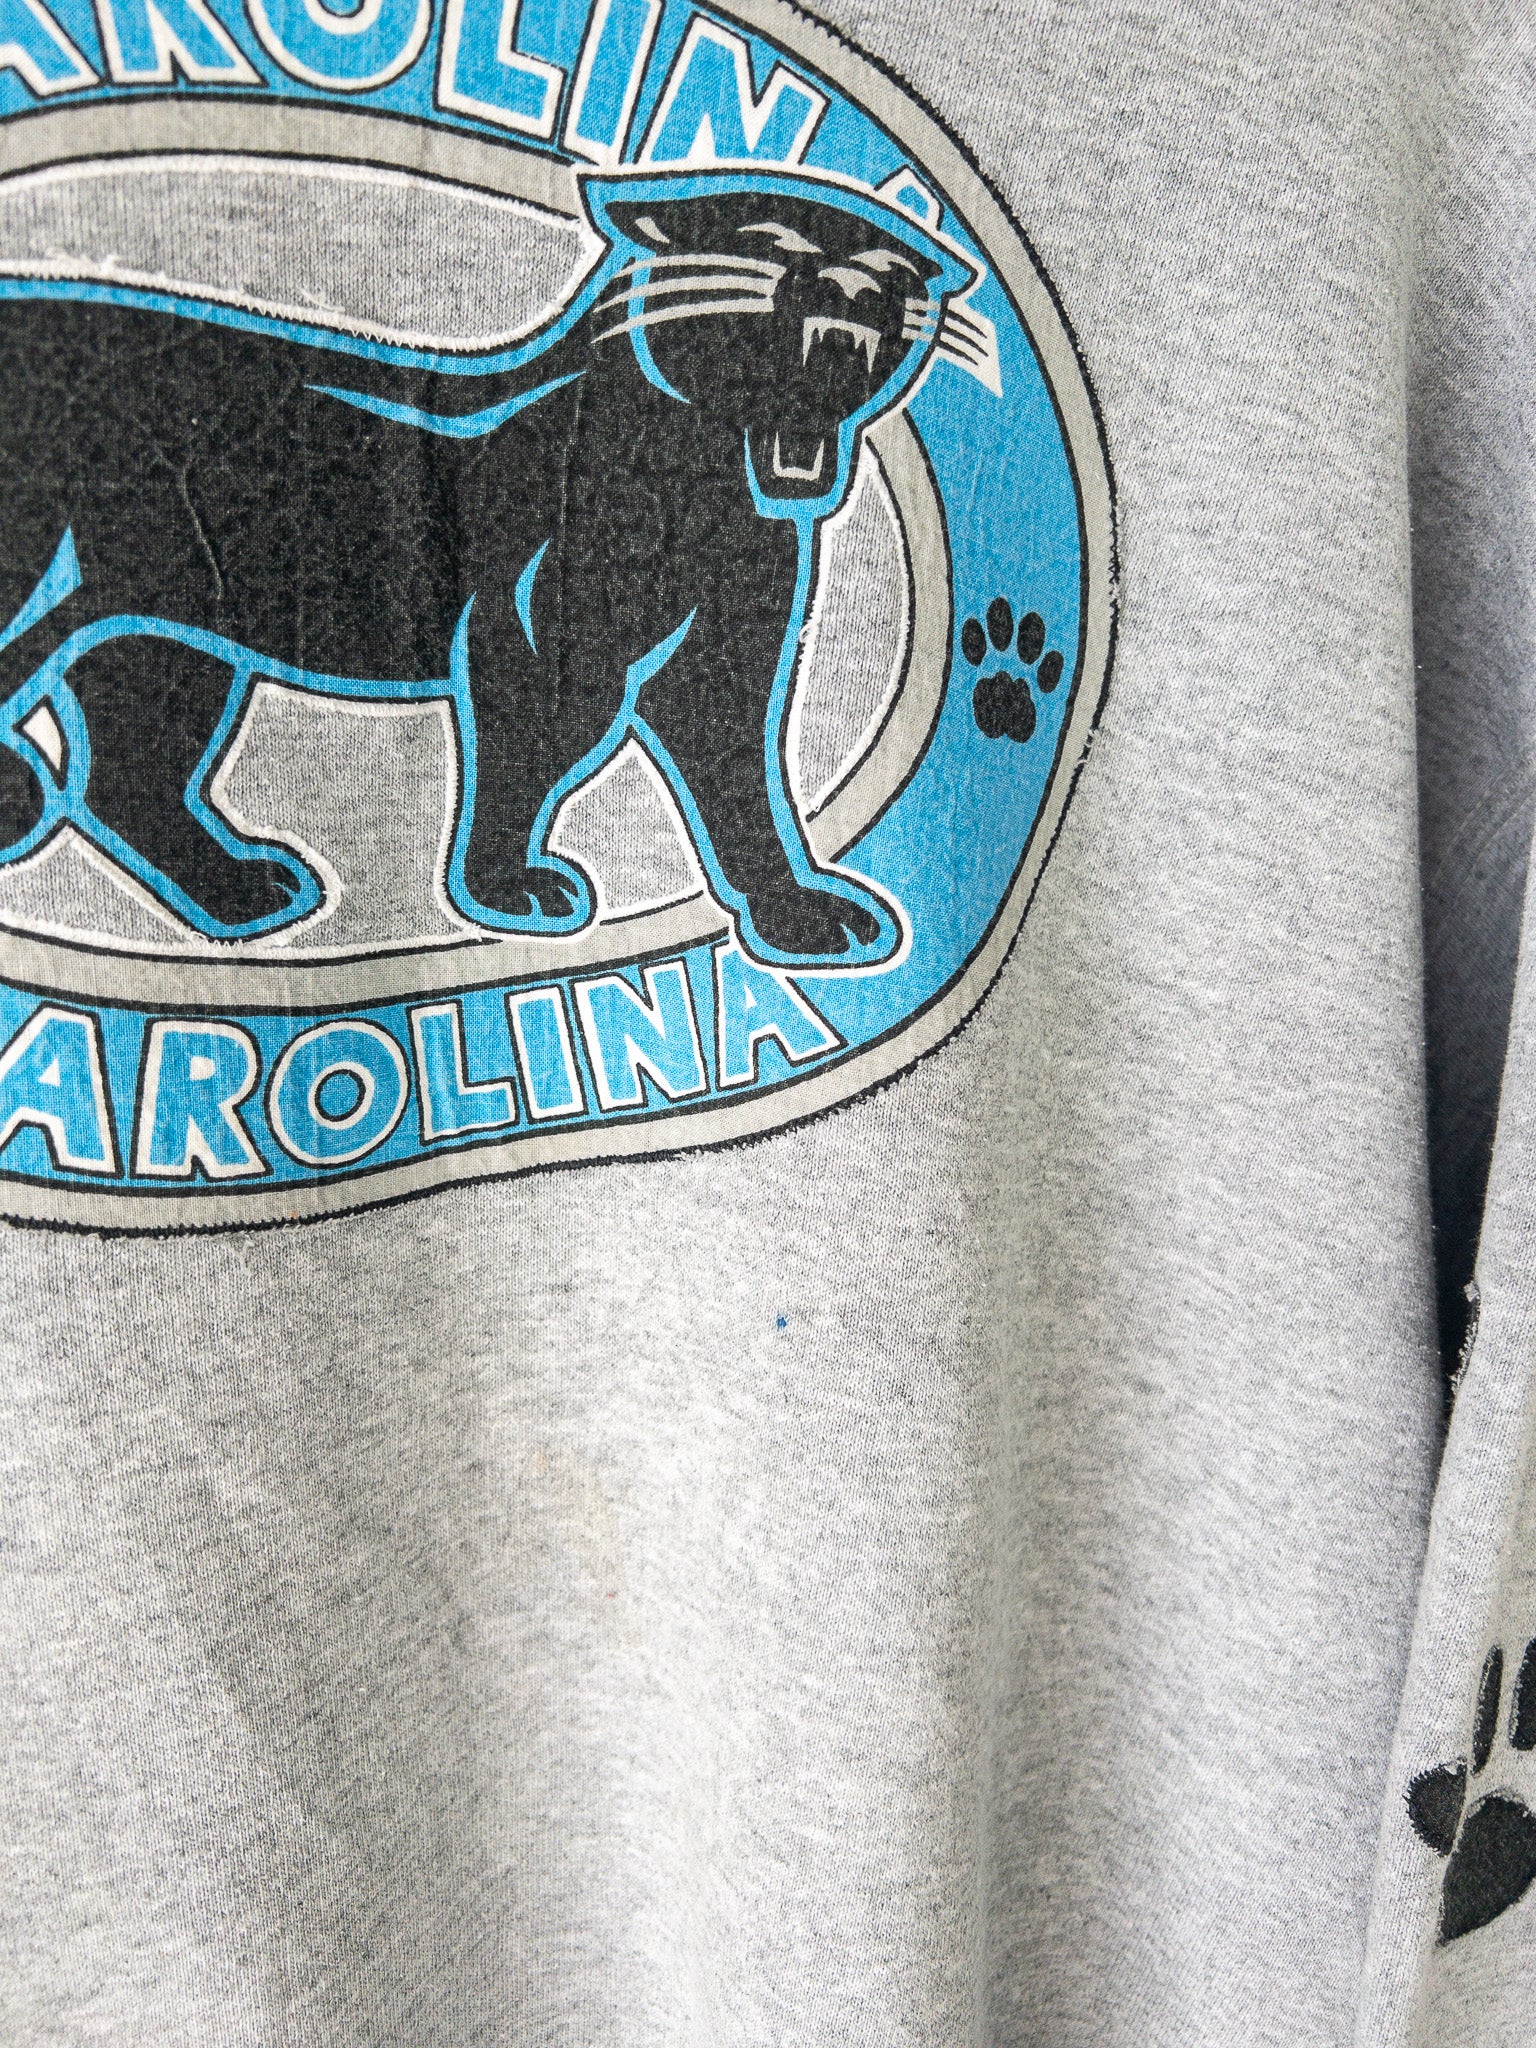 Vintage Carolina Panthers Sweatshirt (XL)